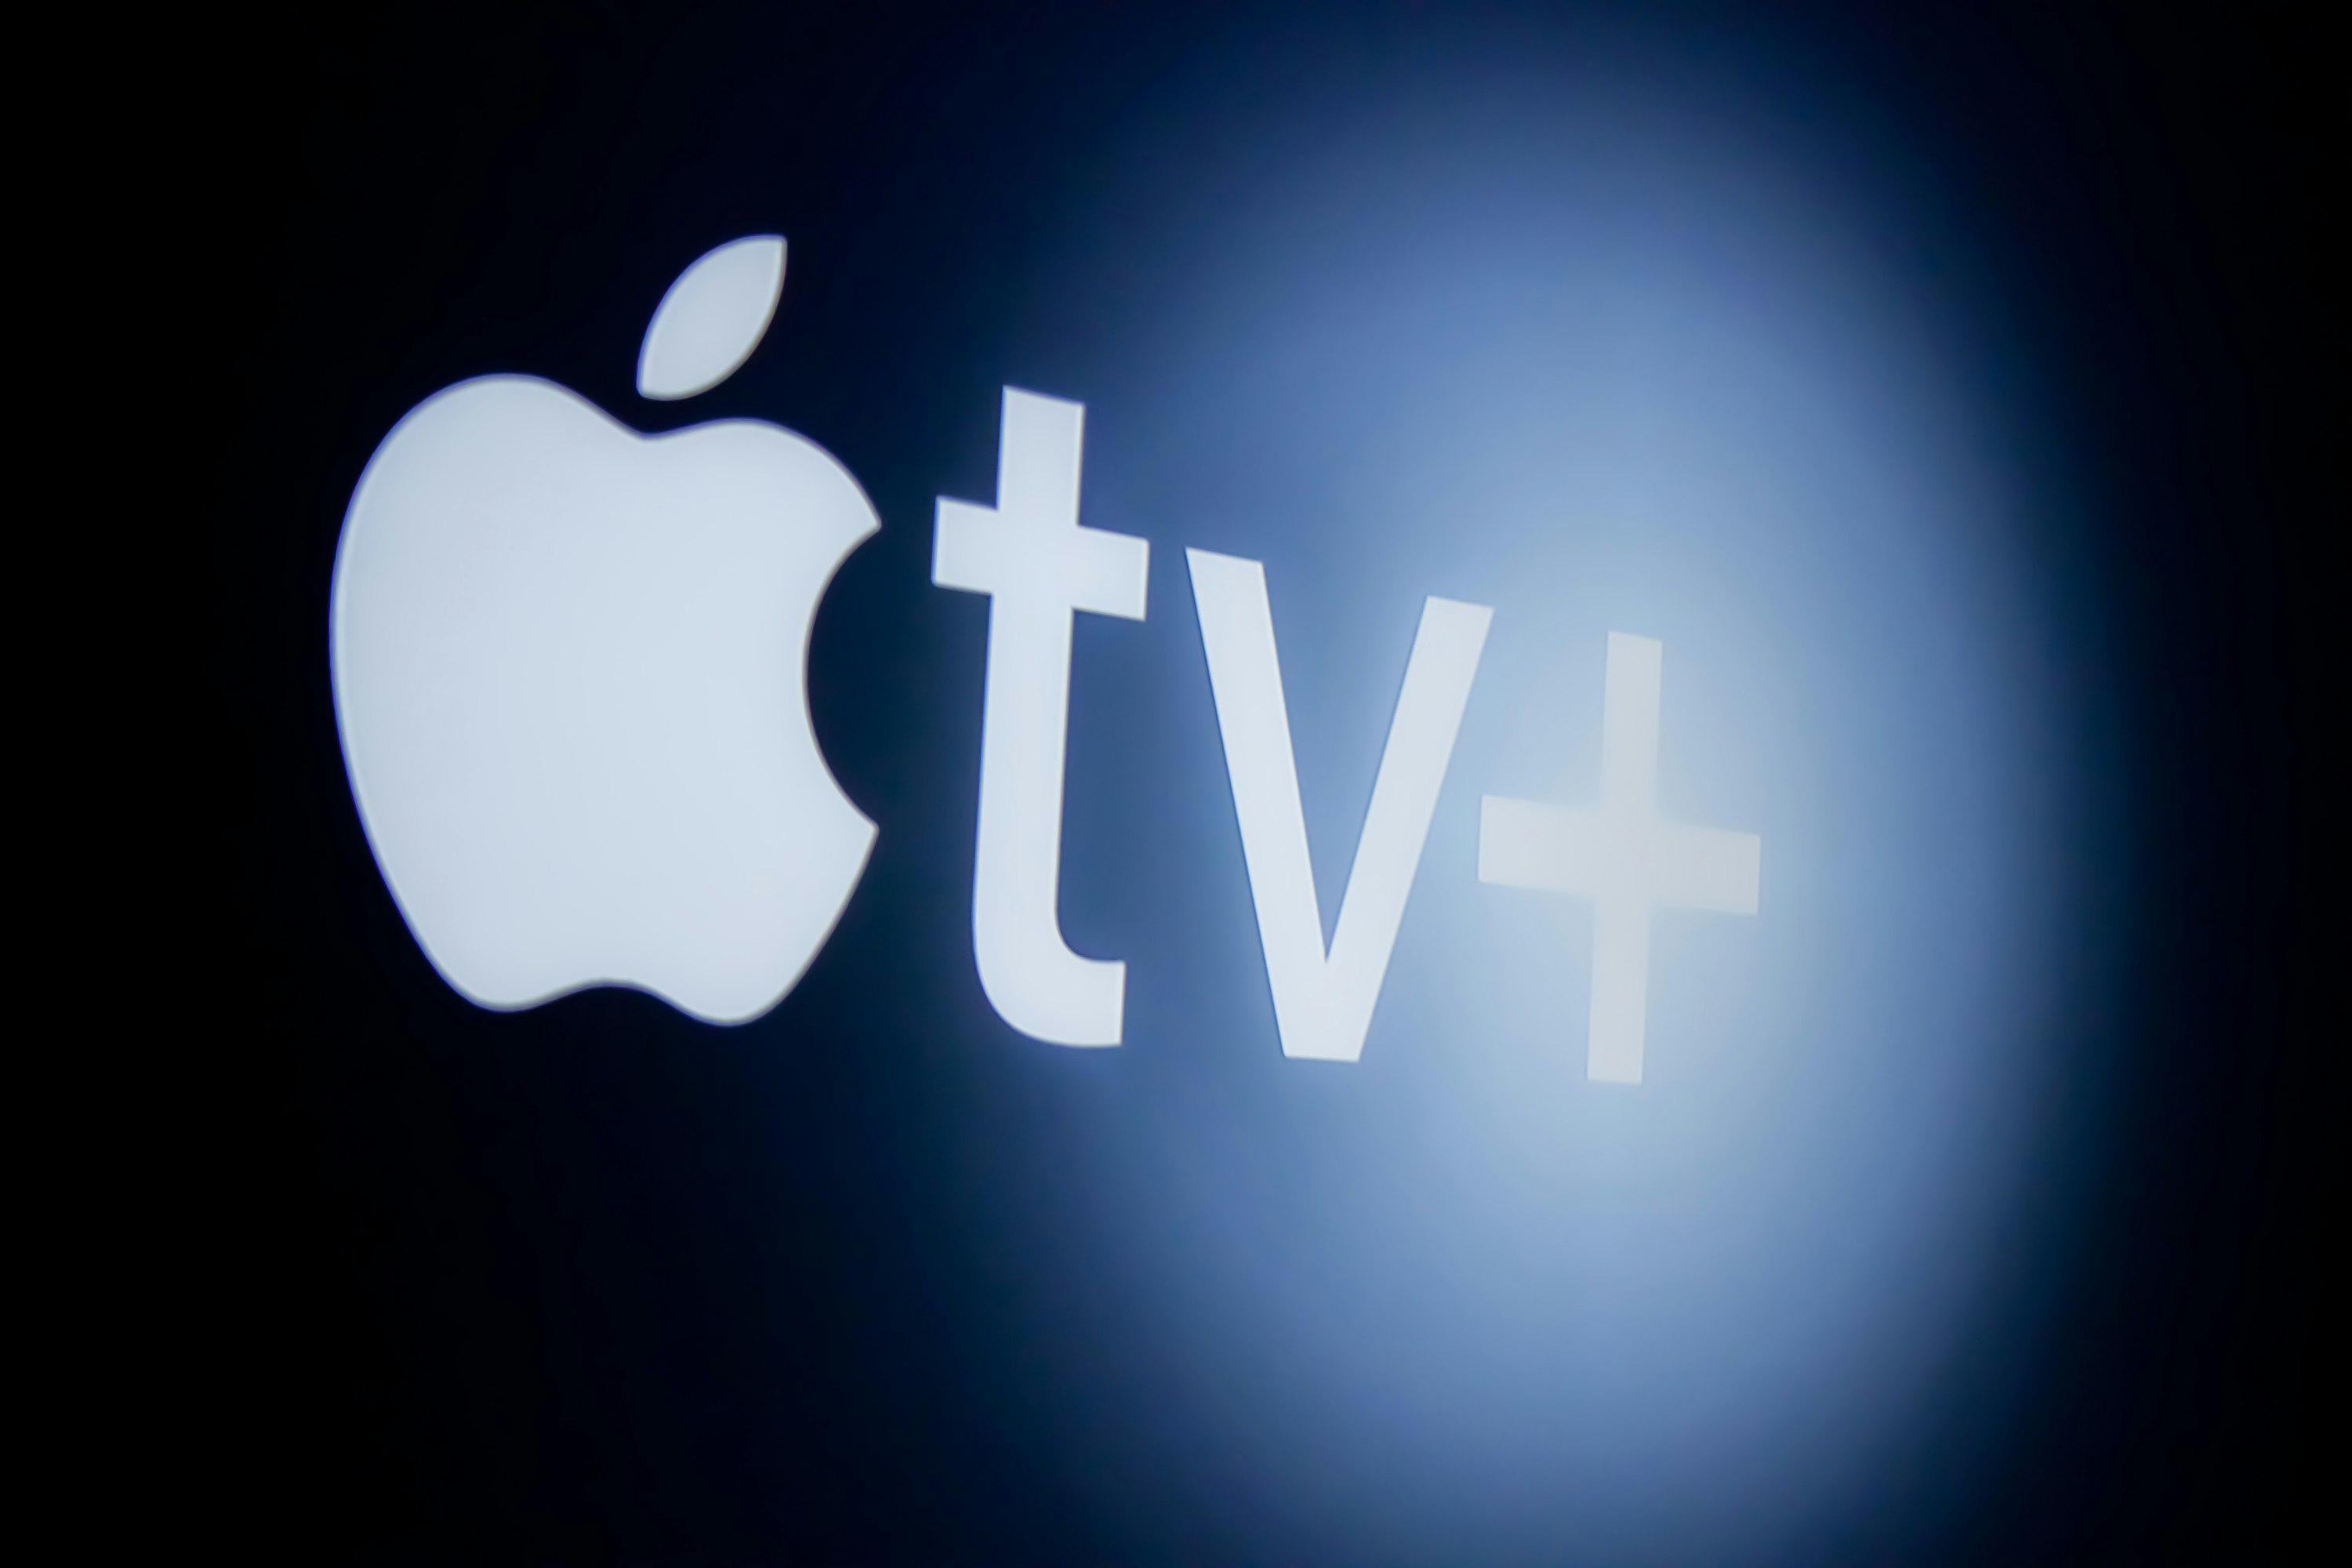 Logo do Apple TV+, com a maçã trincada da Apple e "tv+" escrito ao lado (da esquerda para a direita).